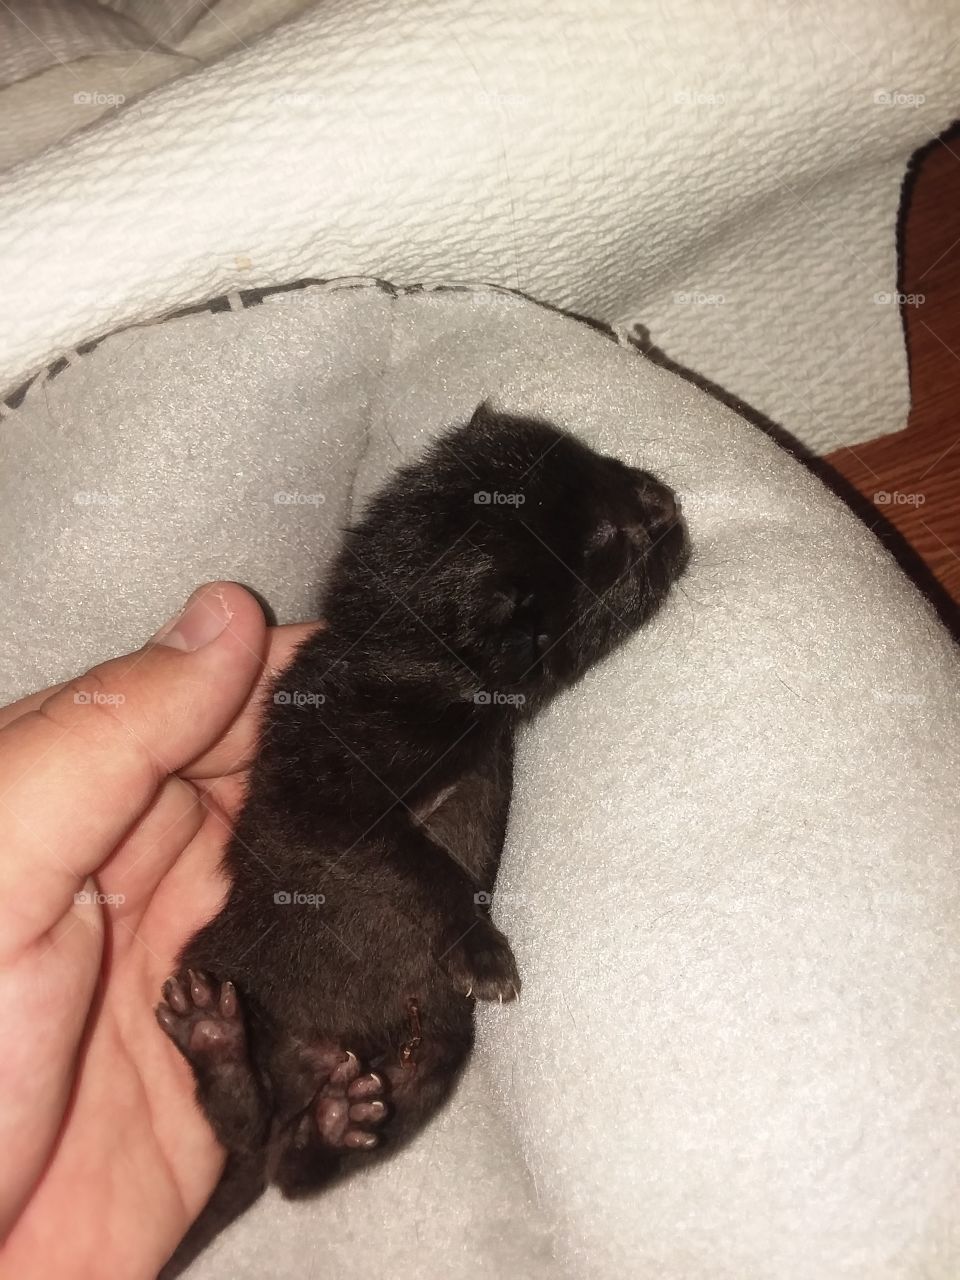 Baby Kitten just born